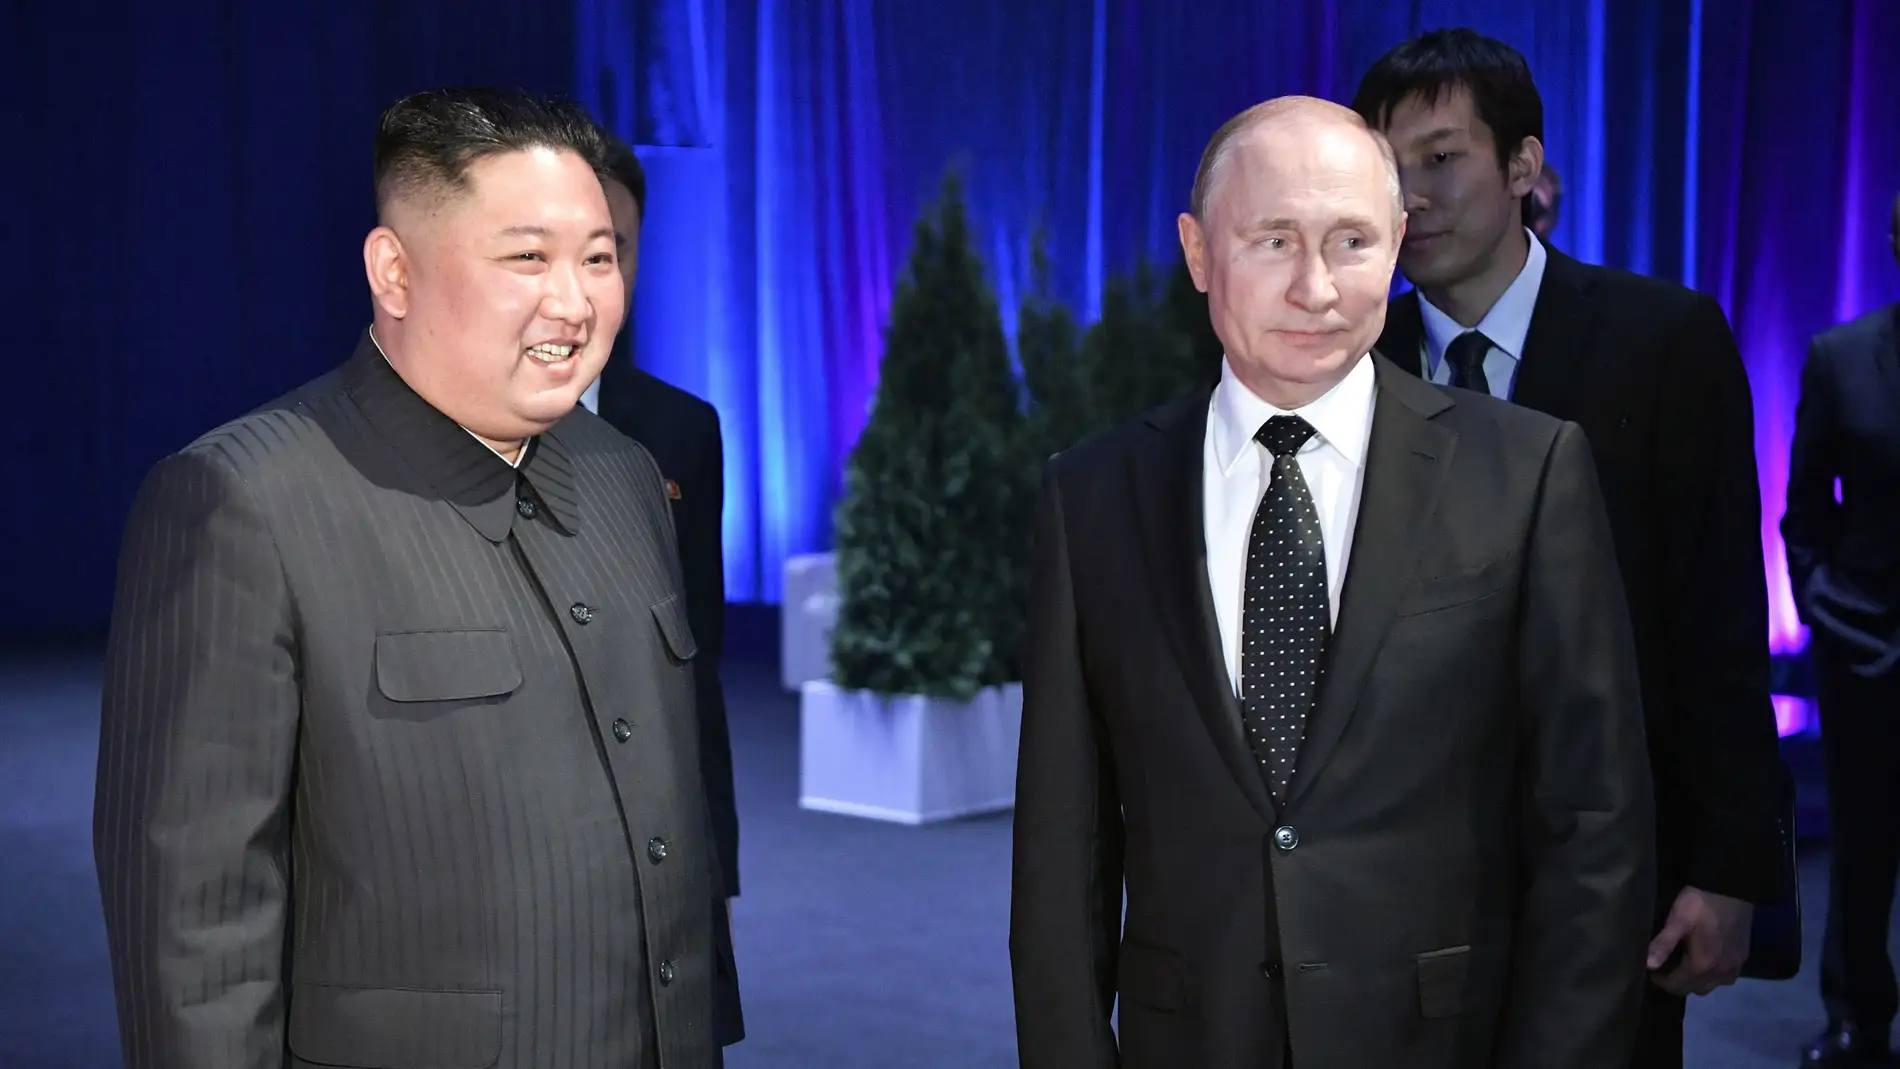  El líder norcoreano, Kim Jong-un, conversa con el presidente ruso, Vladímir Putin 